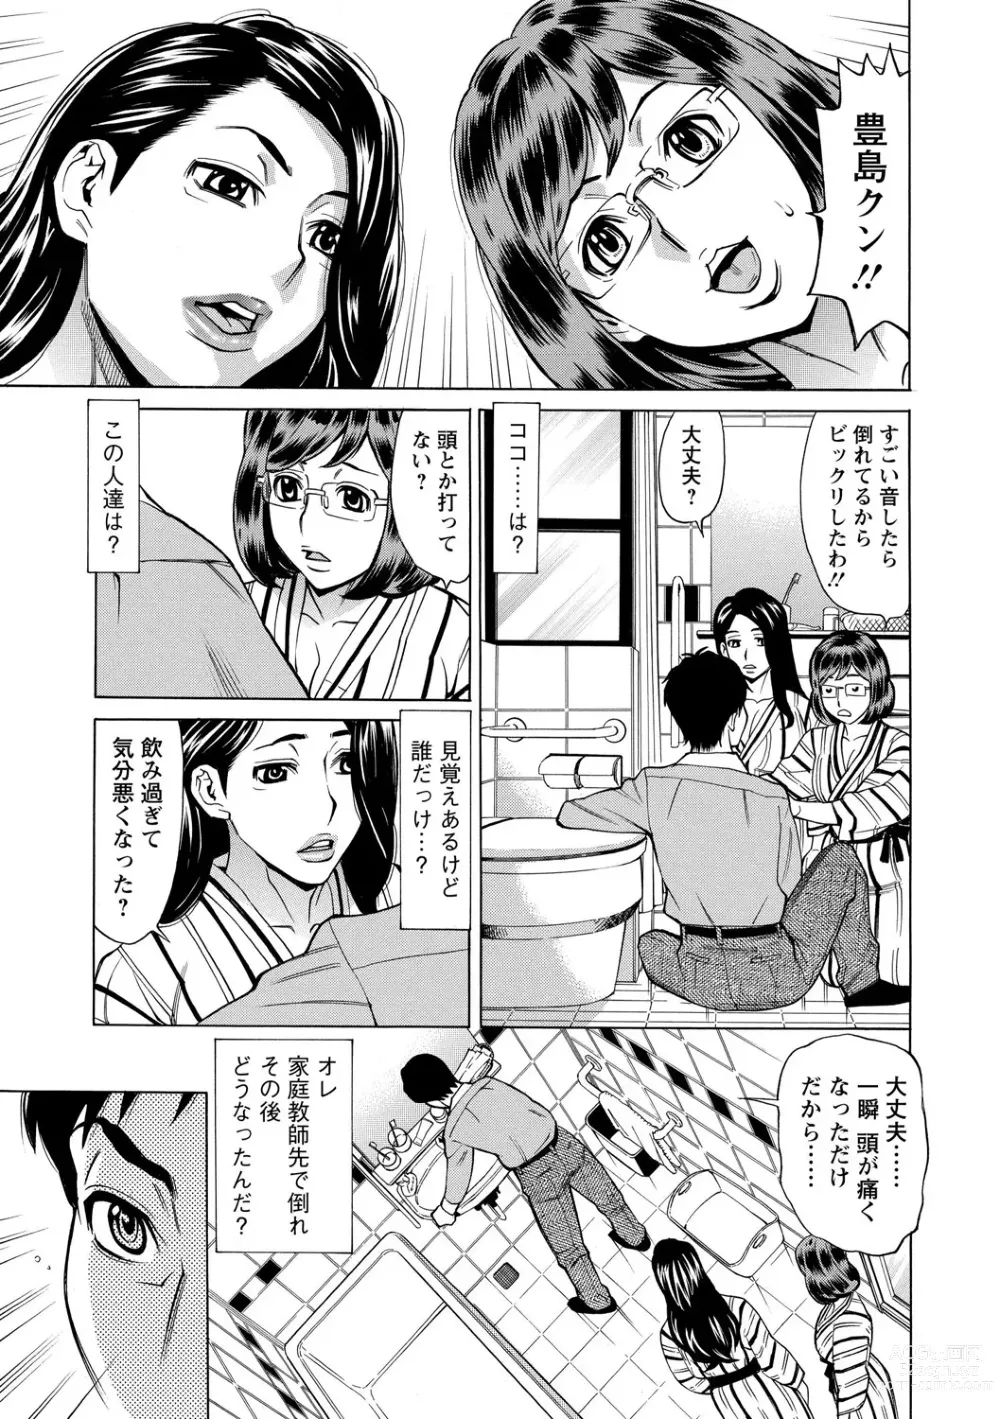 Page 9 of manga Inniku Jukujo no Namashibori.